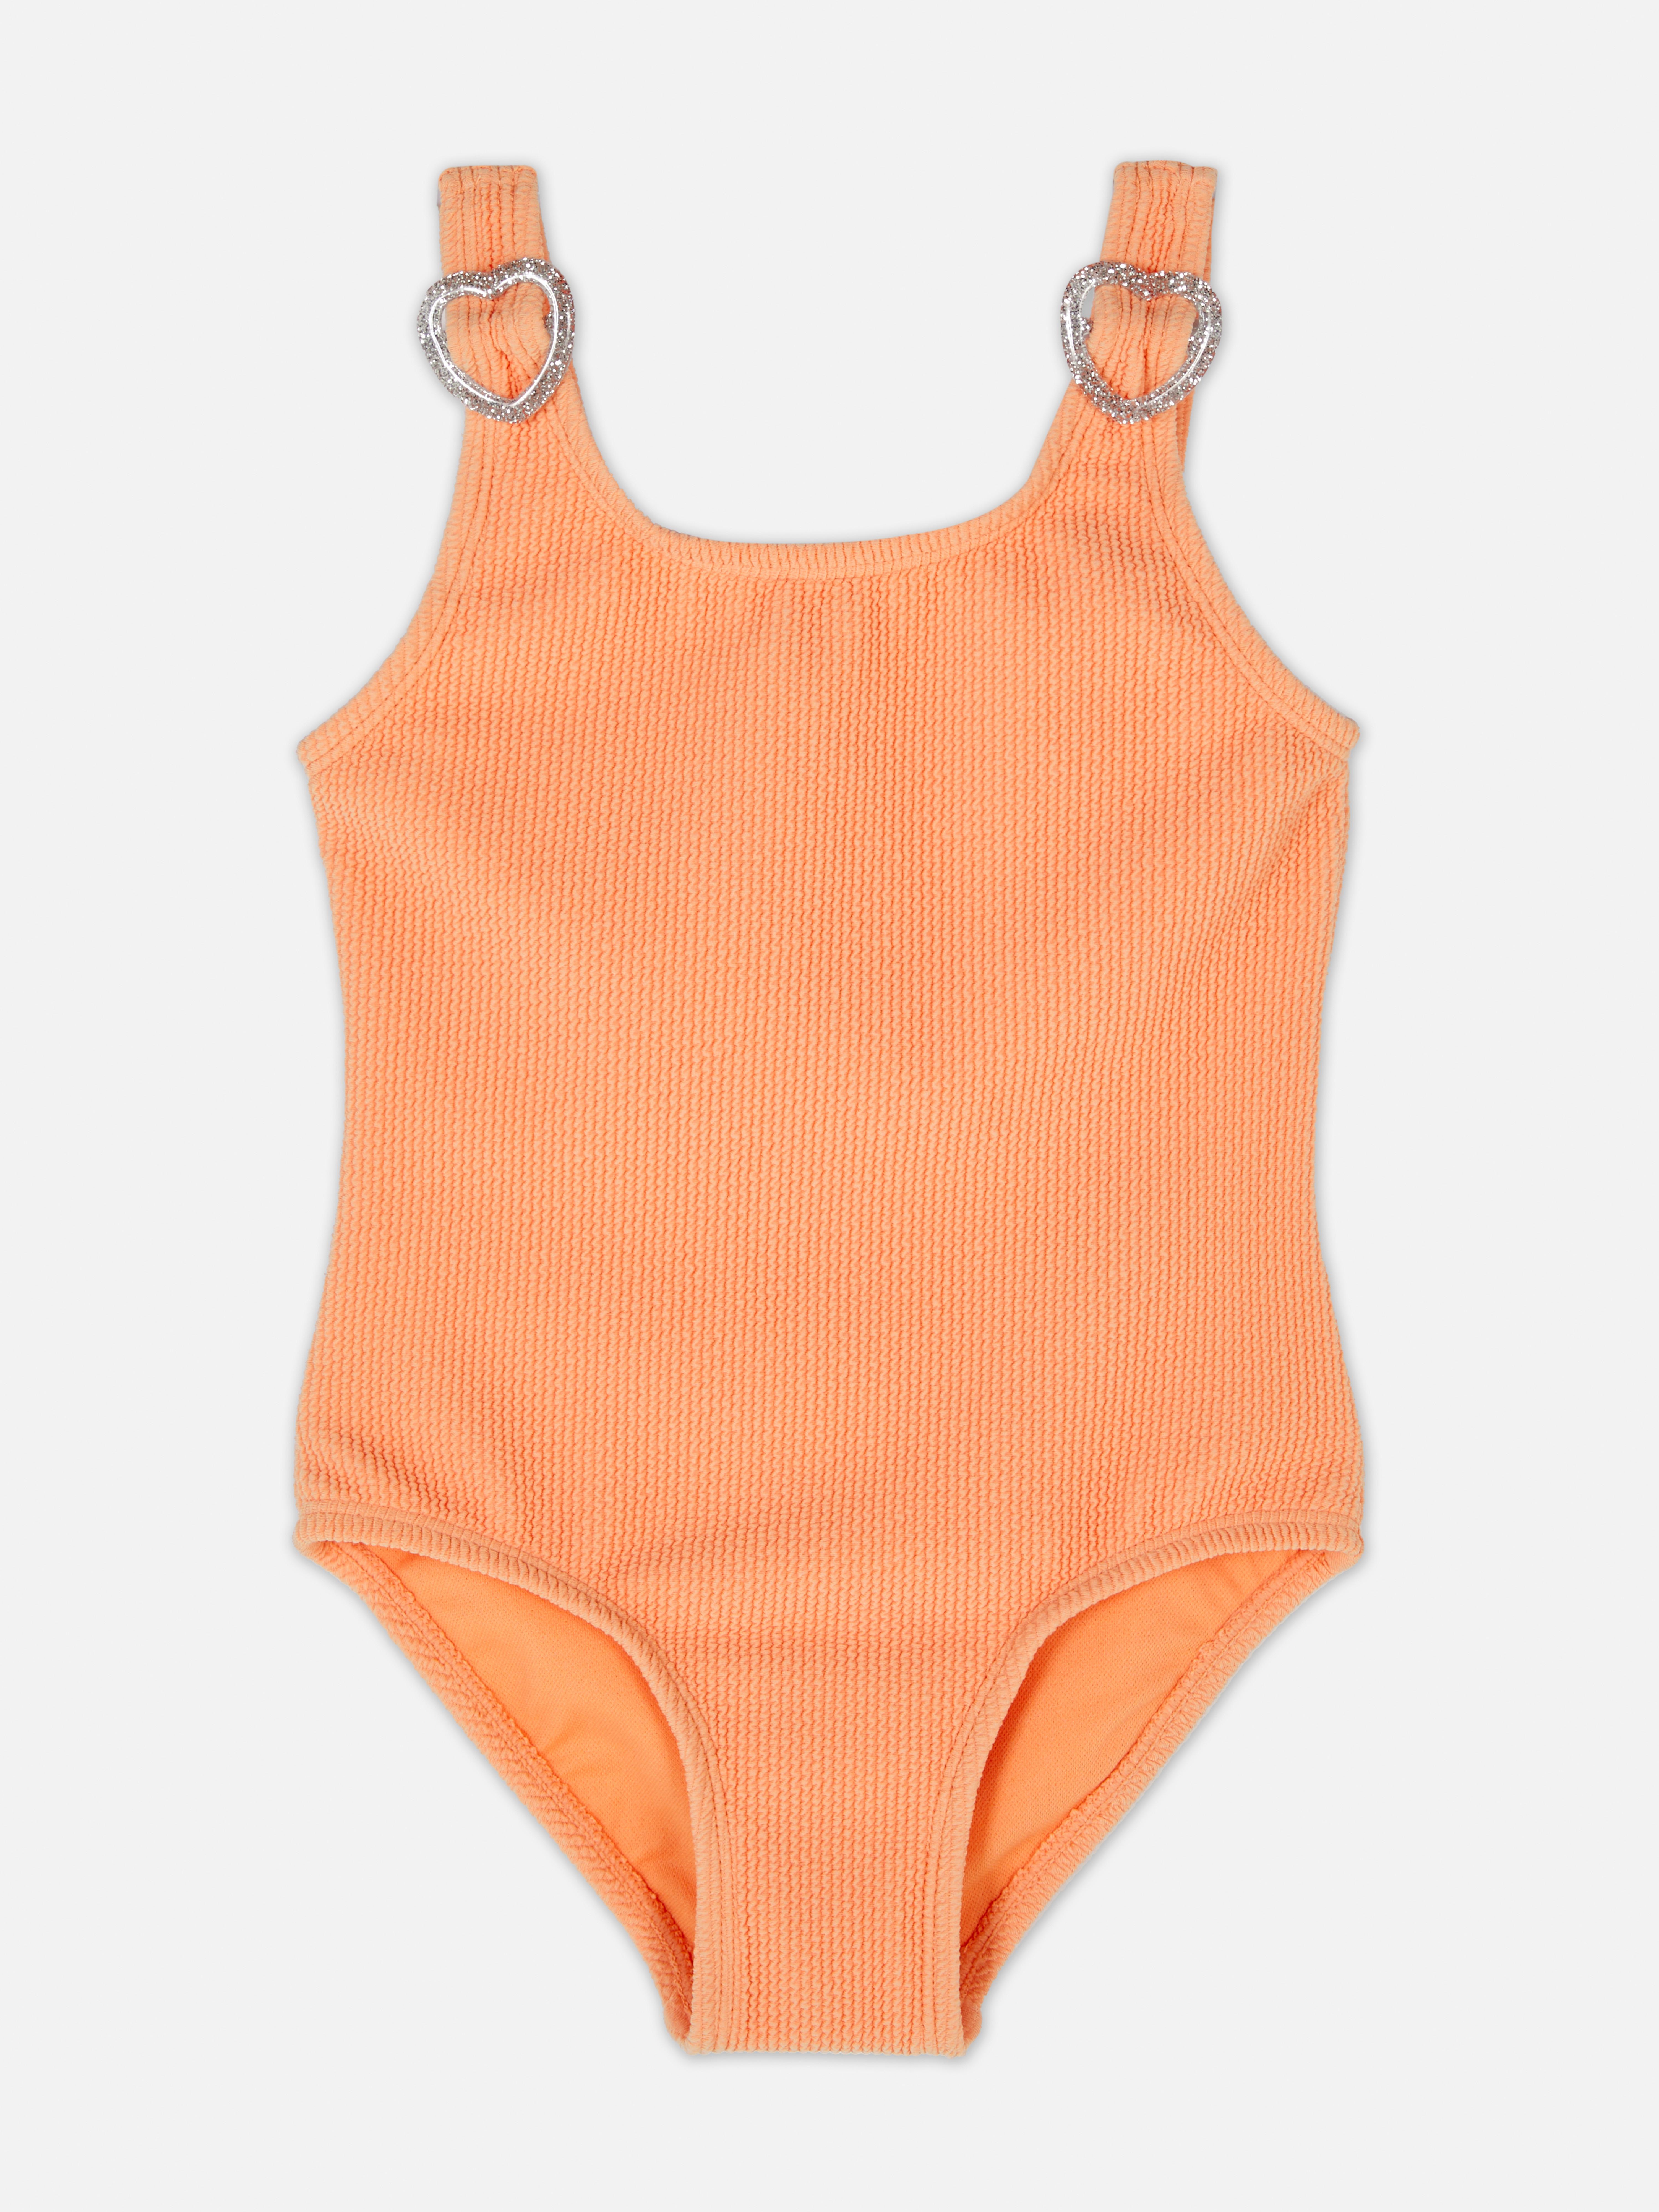 Primark Girls Boys Orange Stripe Bodysuit